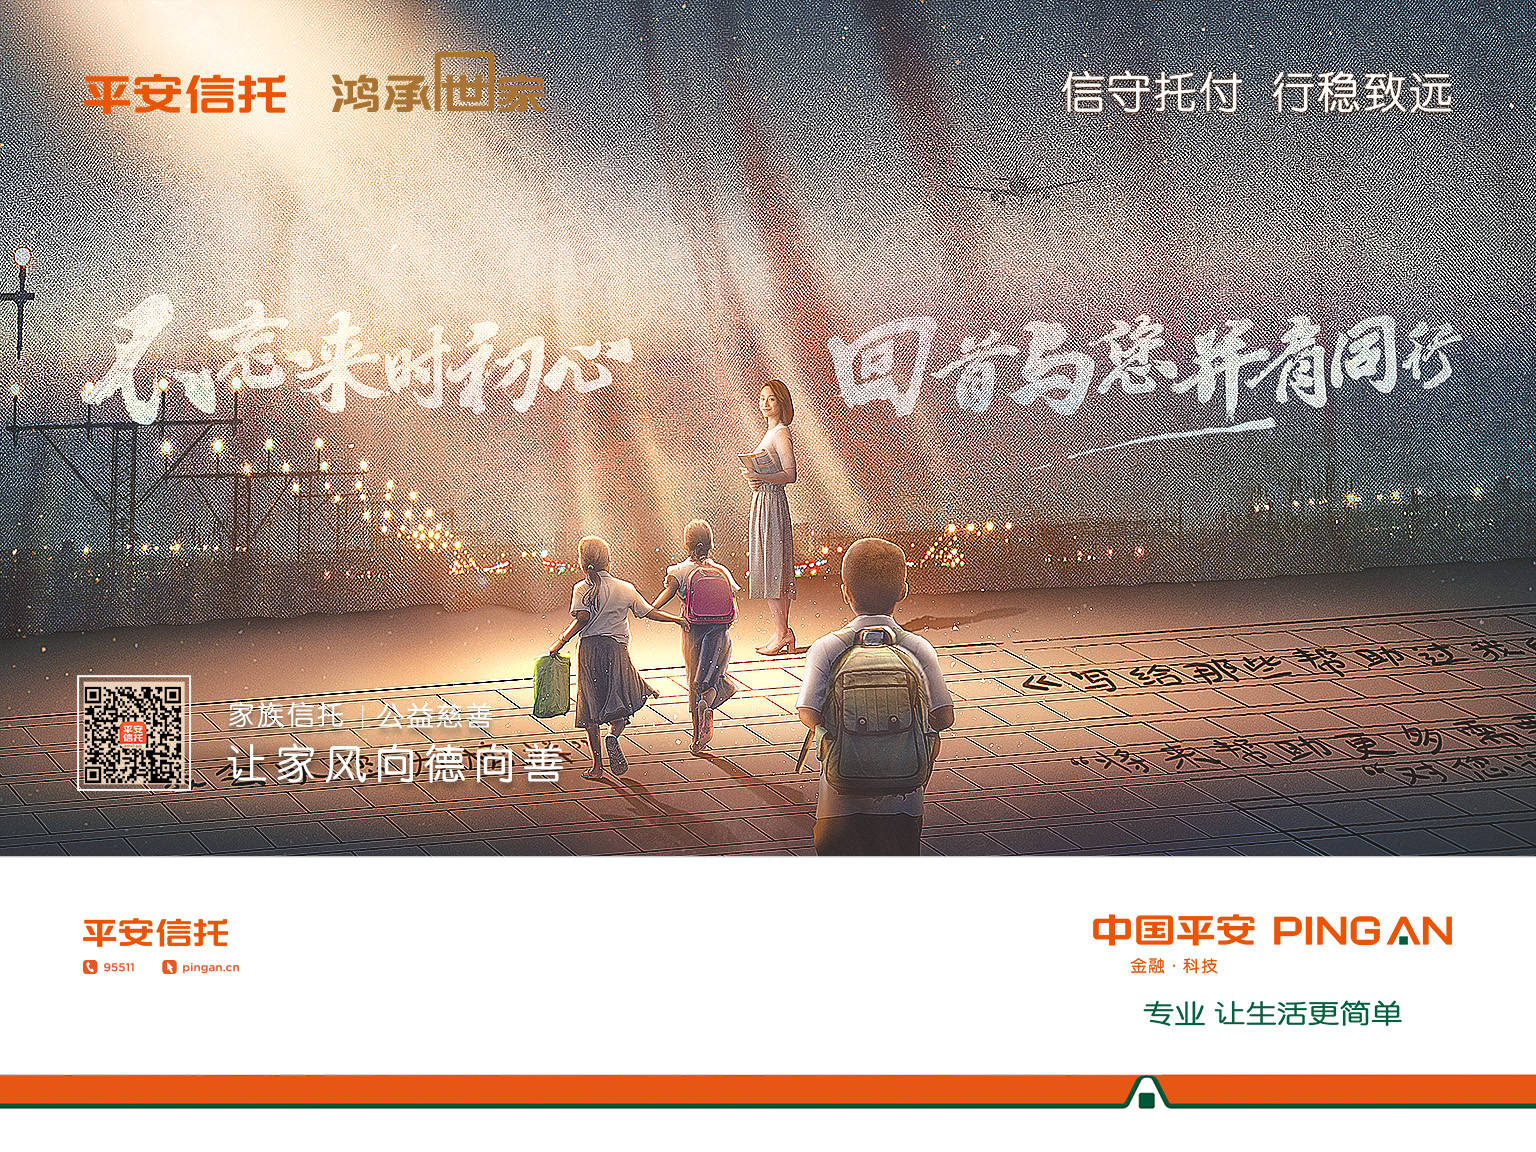 刷屏深圳平安信托鸿承世家家族信托品牌形象广告全新上线